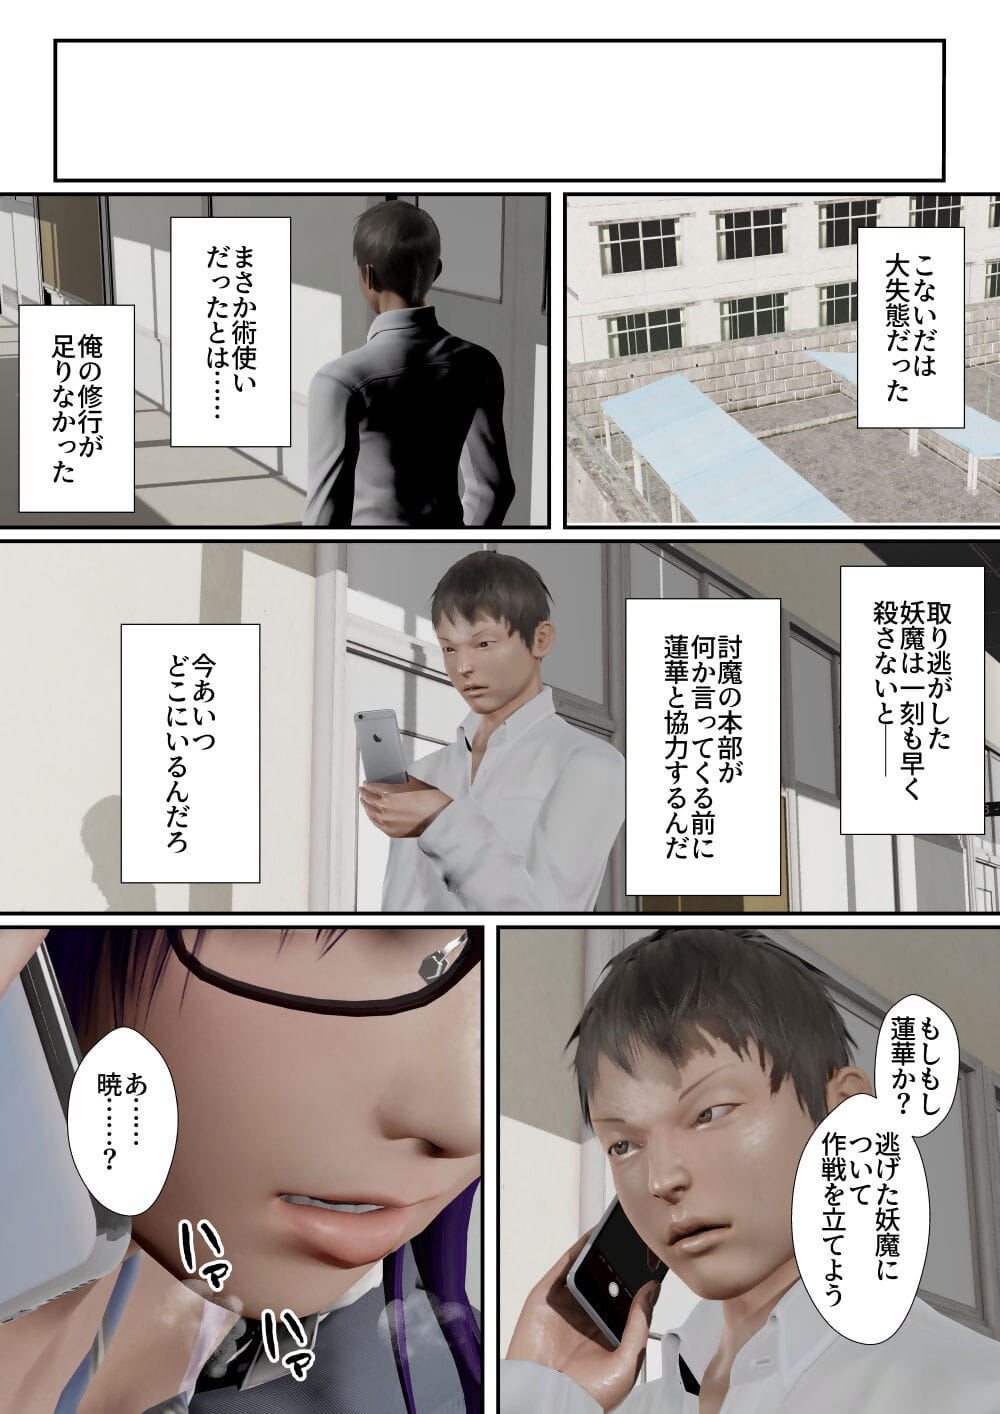 goriramu Touma kenshi shirizu Demon schermer serie page 1